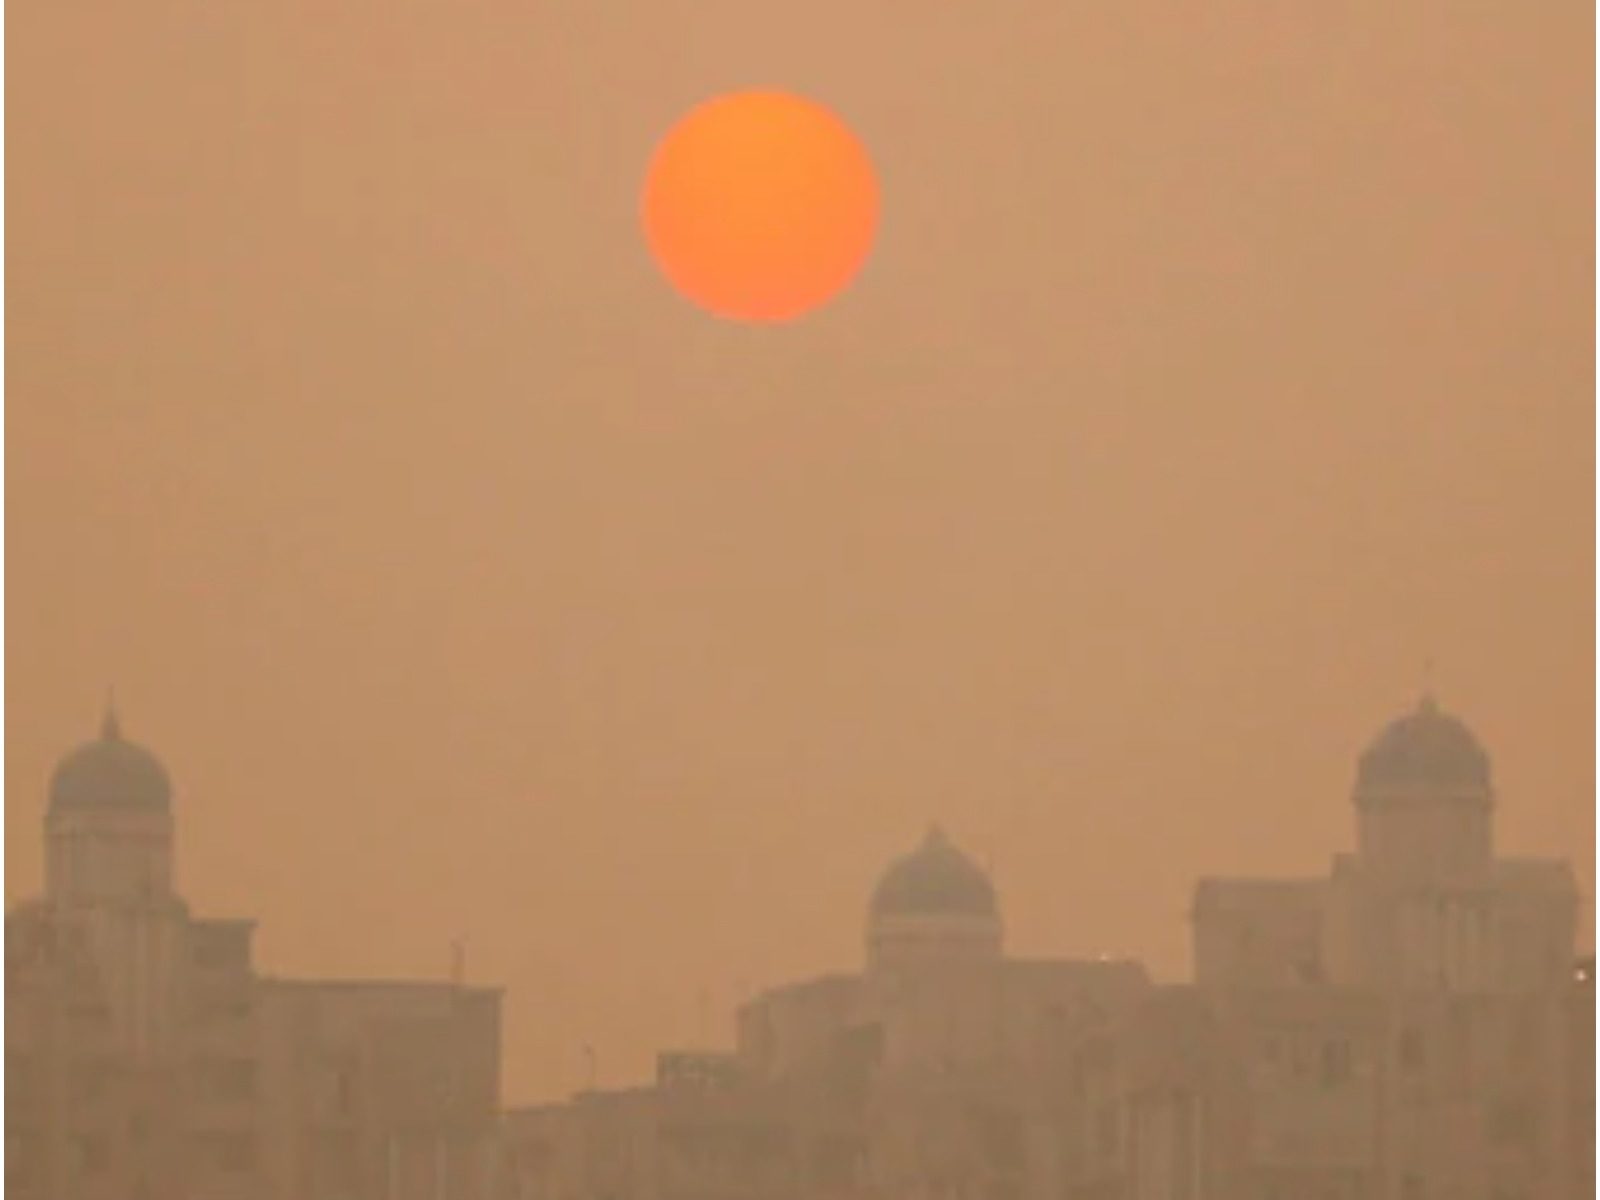 दिल्ली का वायु प्रदूषण दिवाली के दिन, गुरुवार को बढ़कर 20 प्रतिशत हो गया, शाम के वक्त AQI 363 दर्ज किया गया.